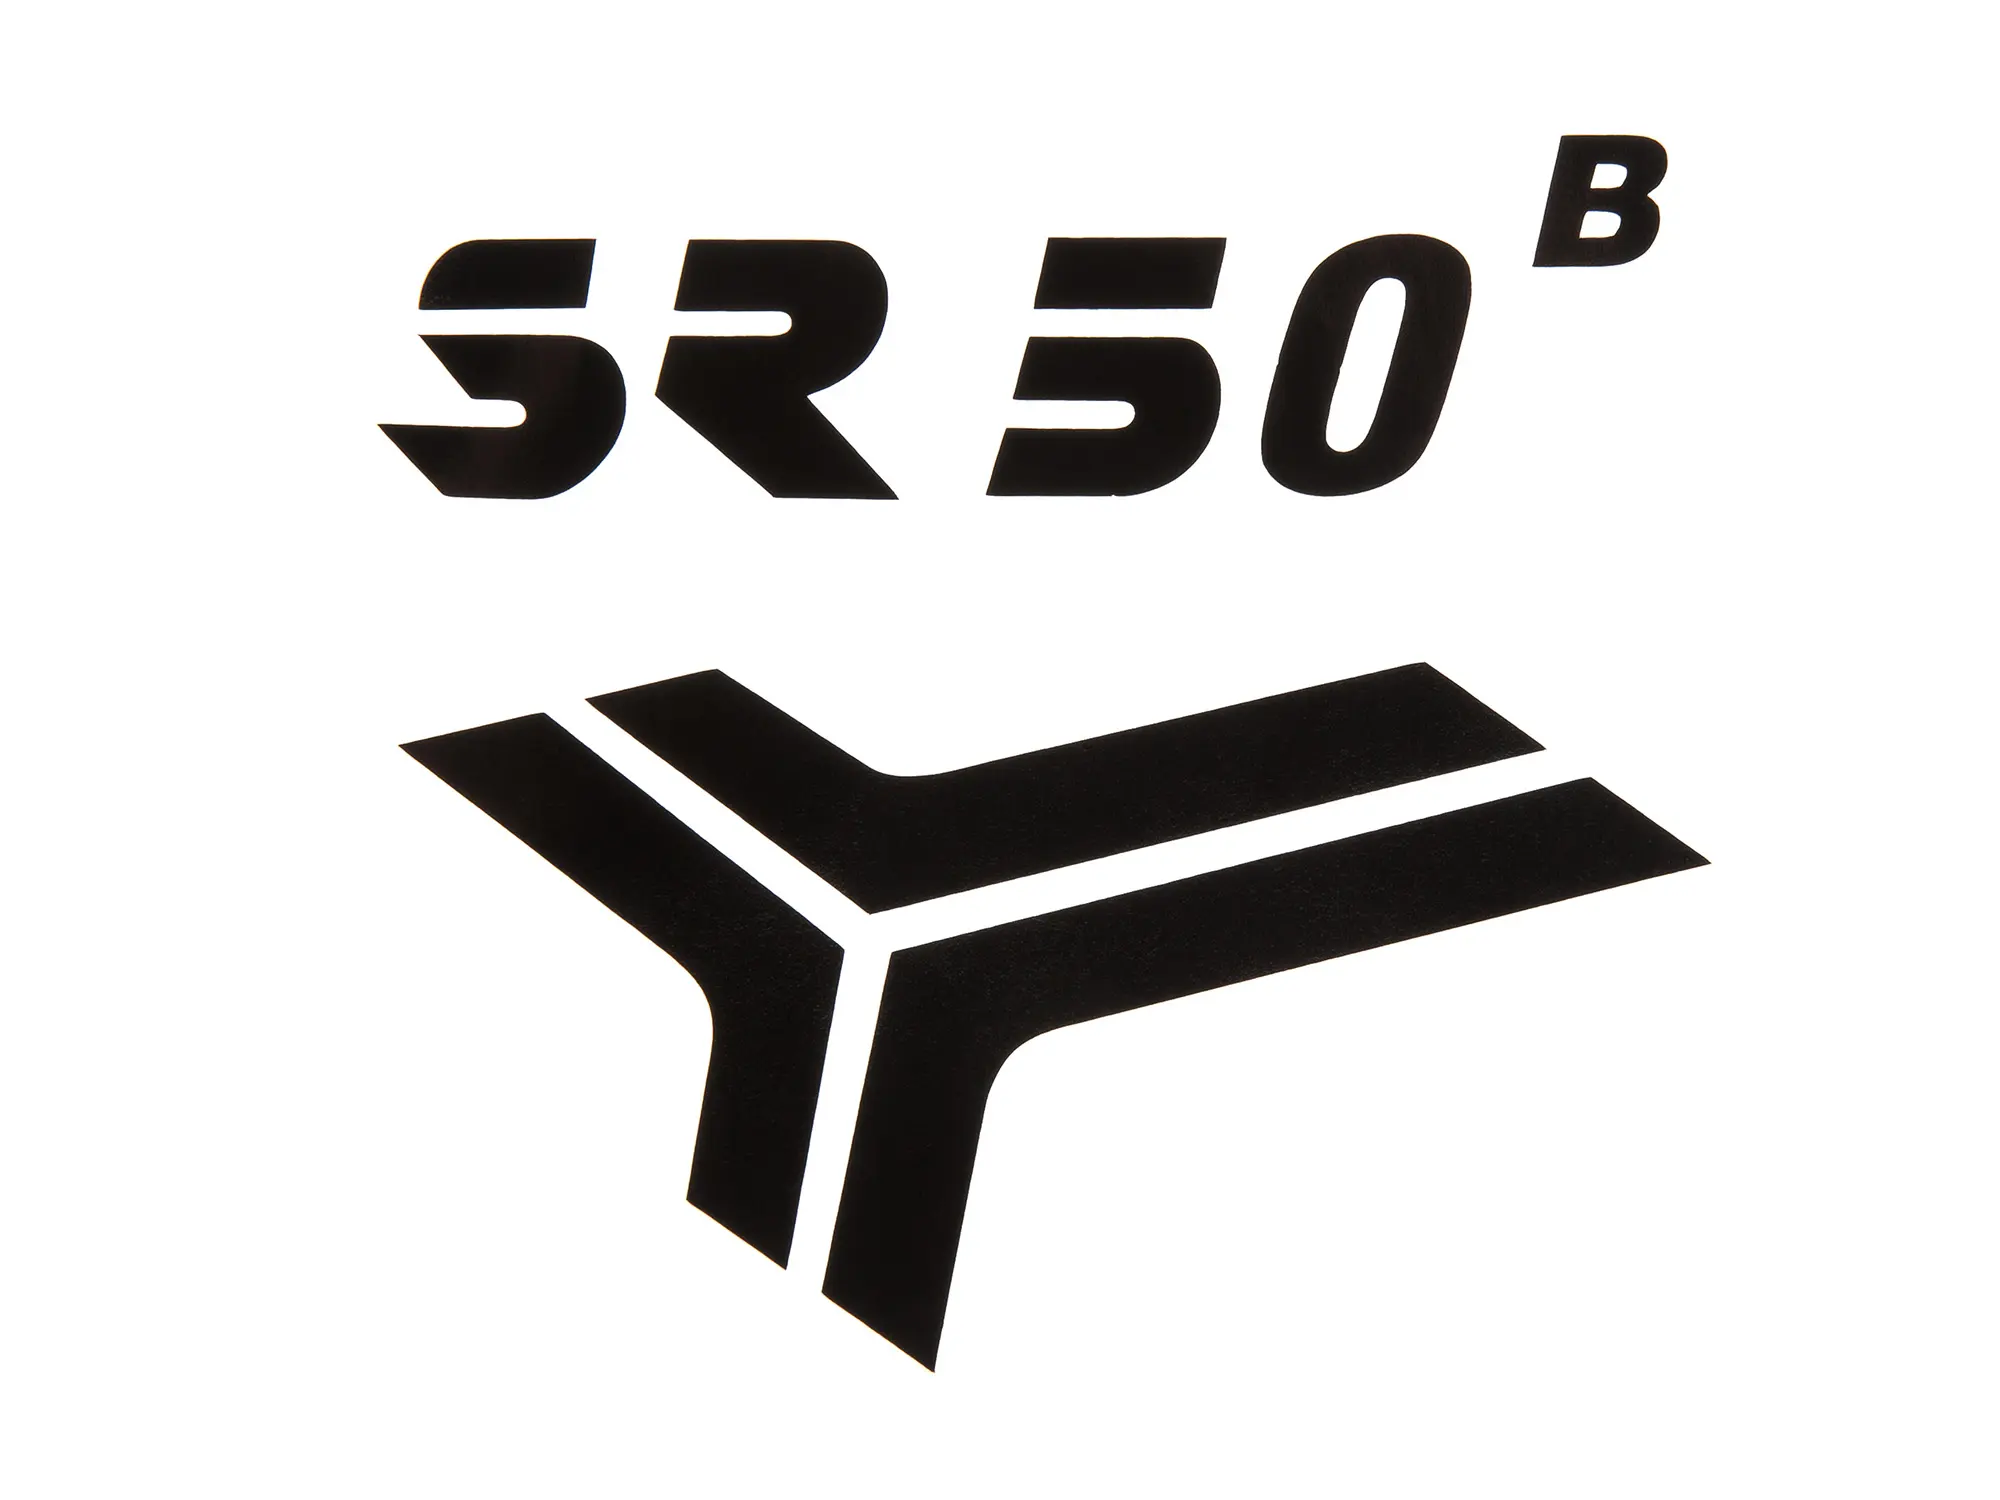 Schriftzug (Folie) "SR50 B" schwarz für Knieblech - für Simson SR50, Art.-Nr.: 10067989 - Bild 1